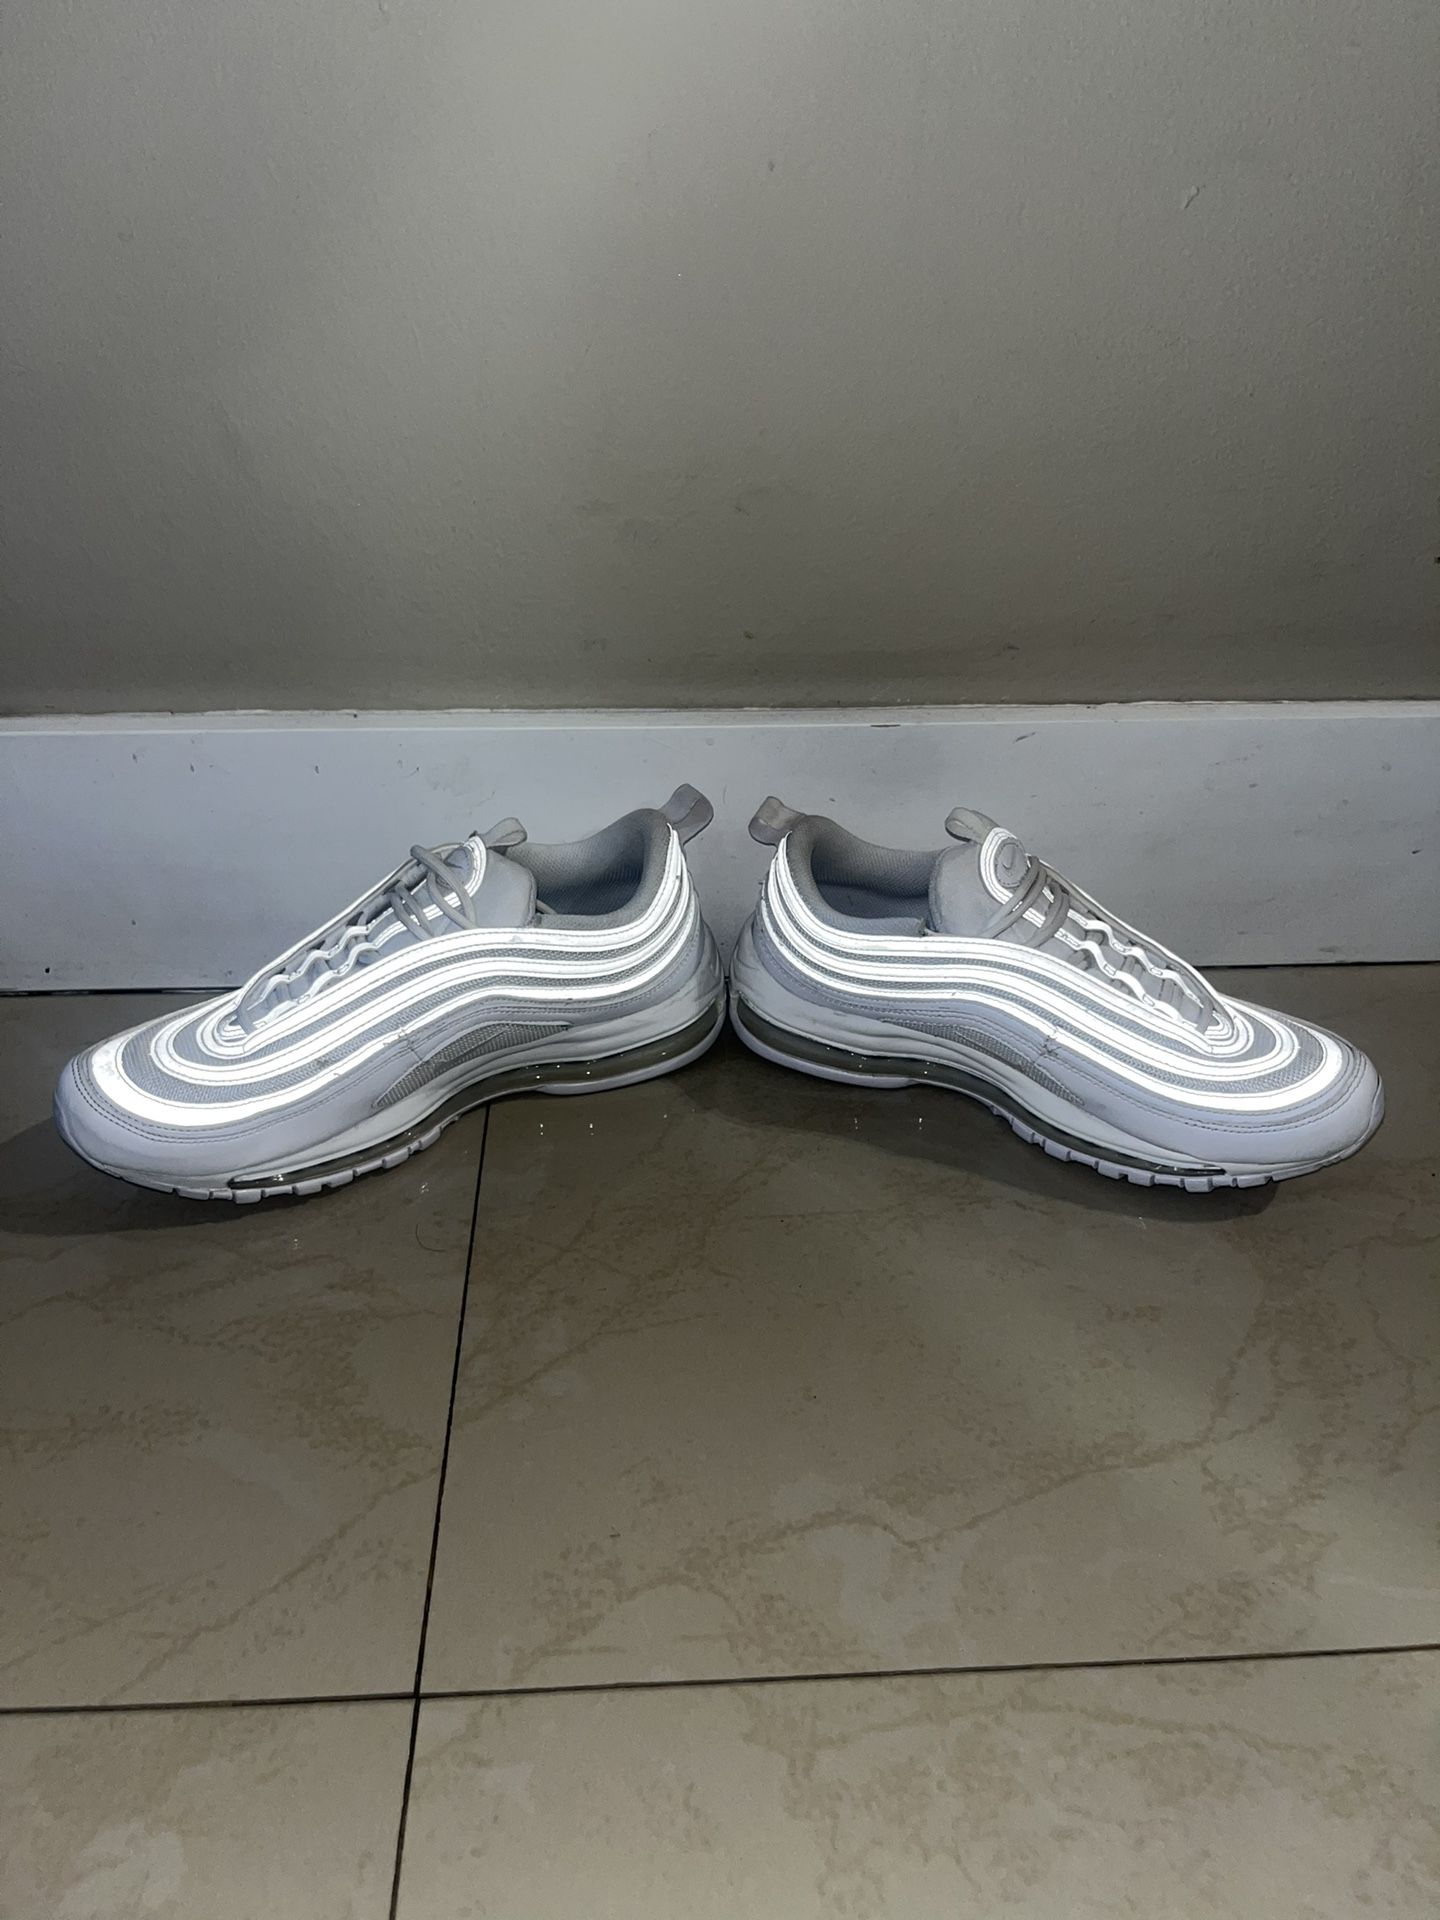 Nike Air Max 97’ Triple White - Size 10.5 Women (Size 9 Men)